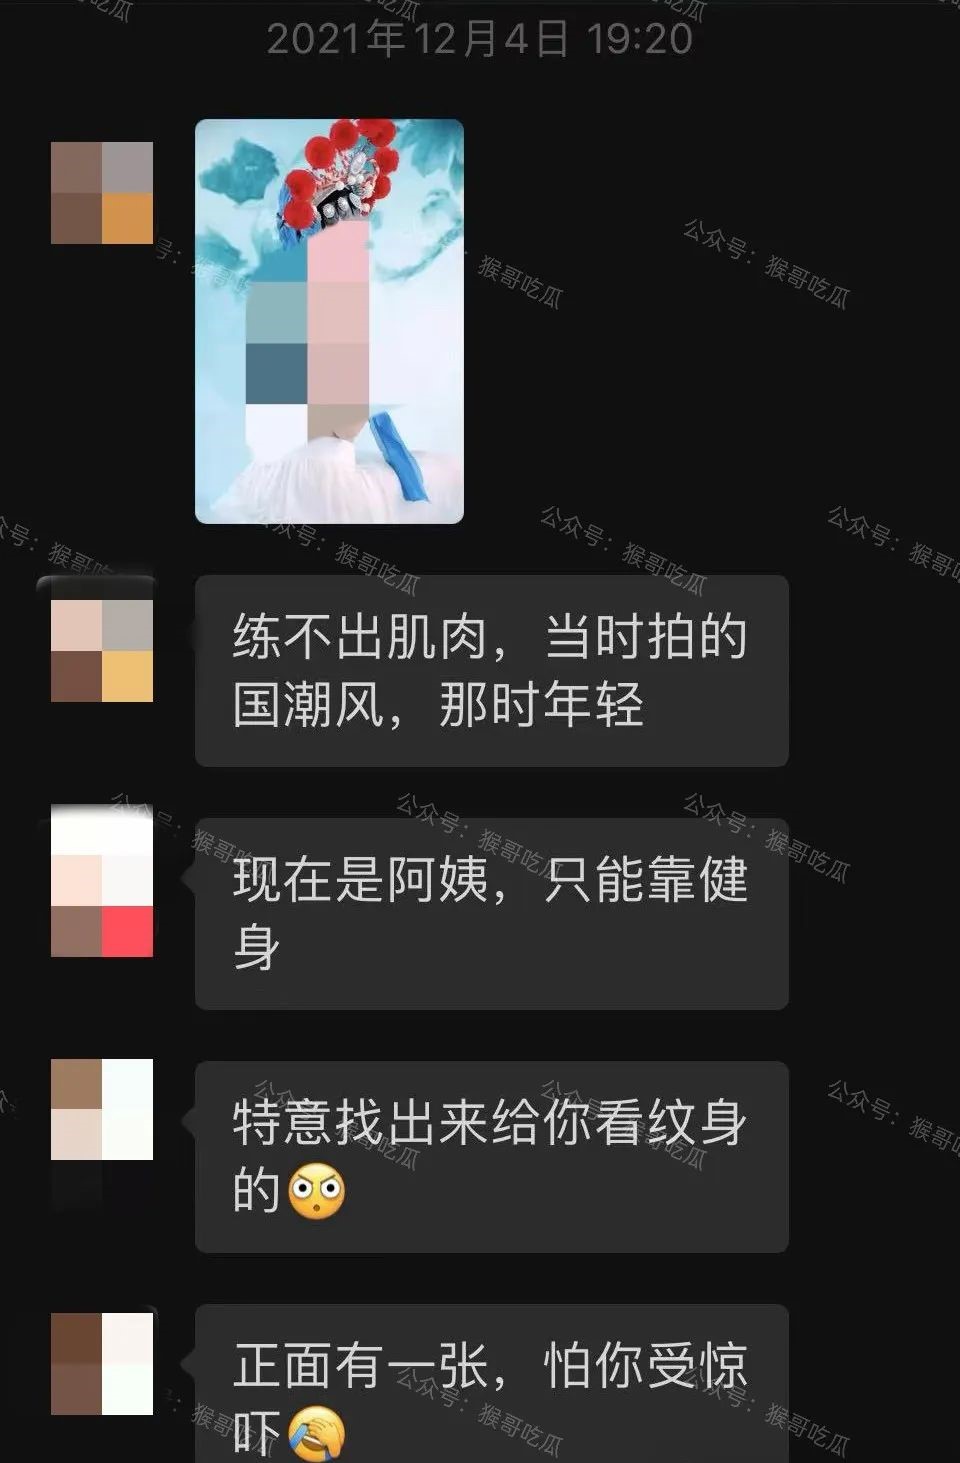 李紹萍與男方微信對話截圖流出。